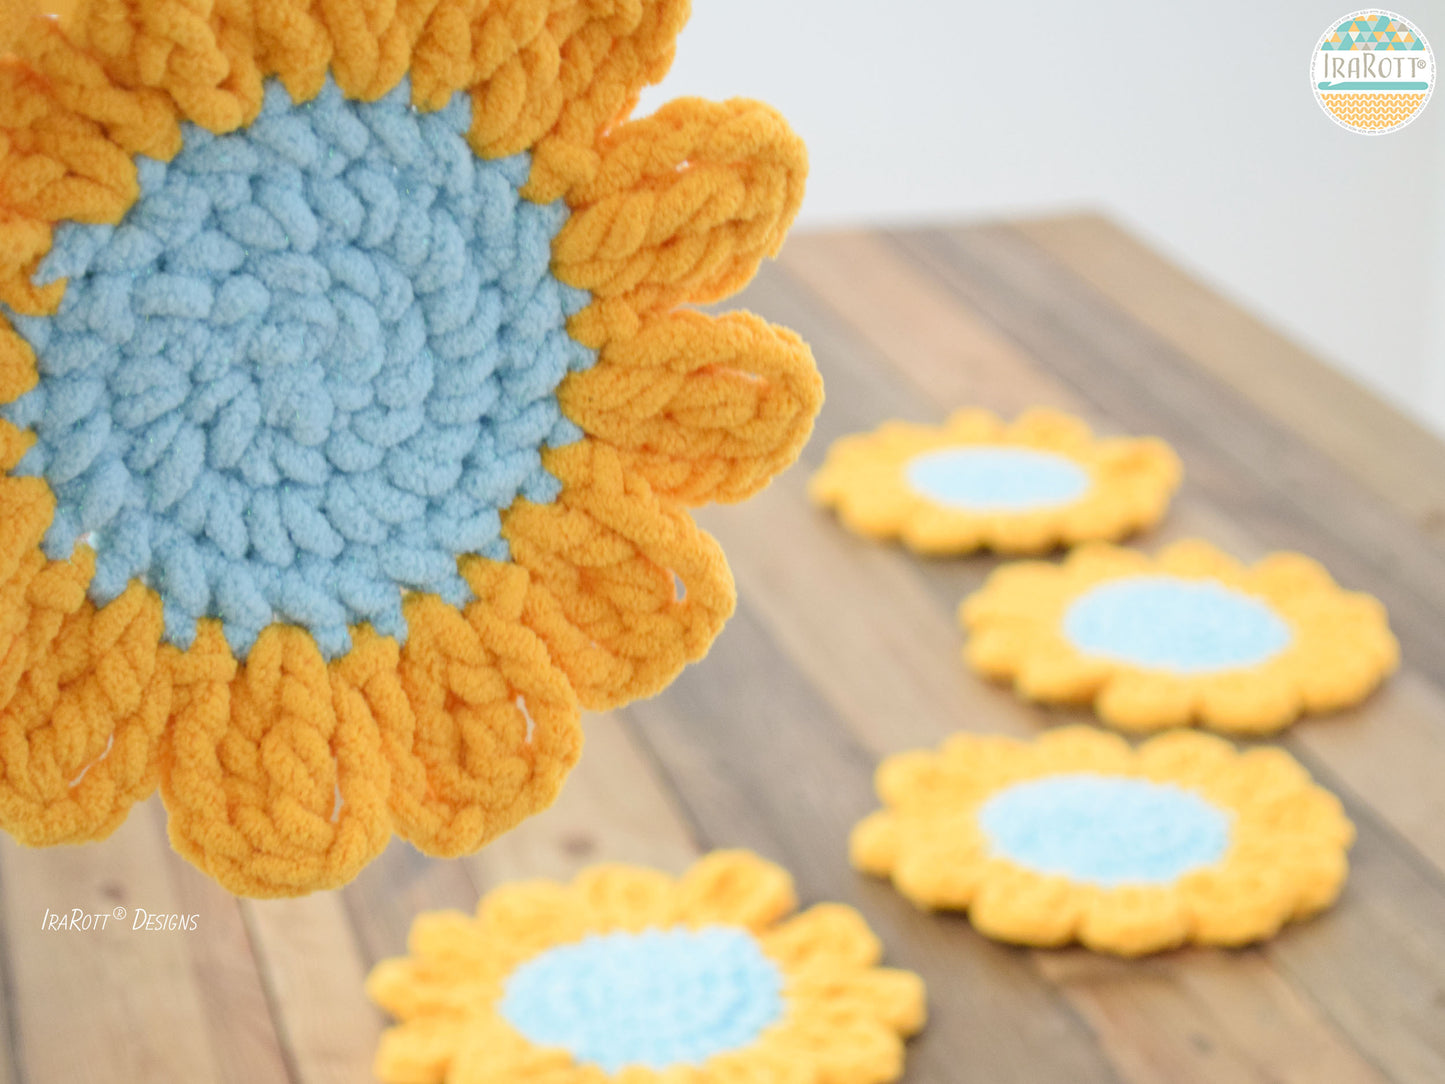 Sunflower Power Coasters Crochet Pattern